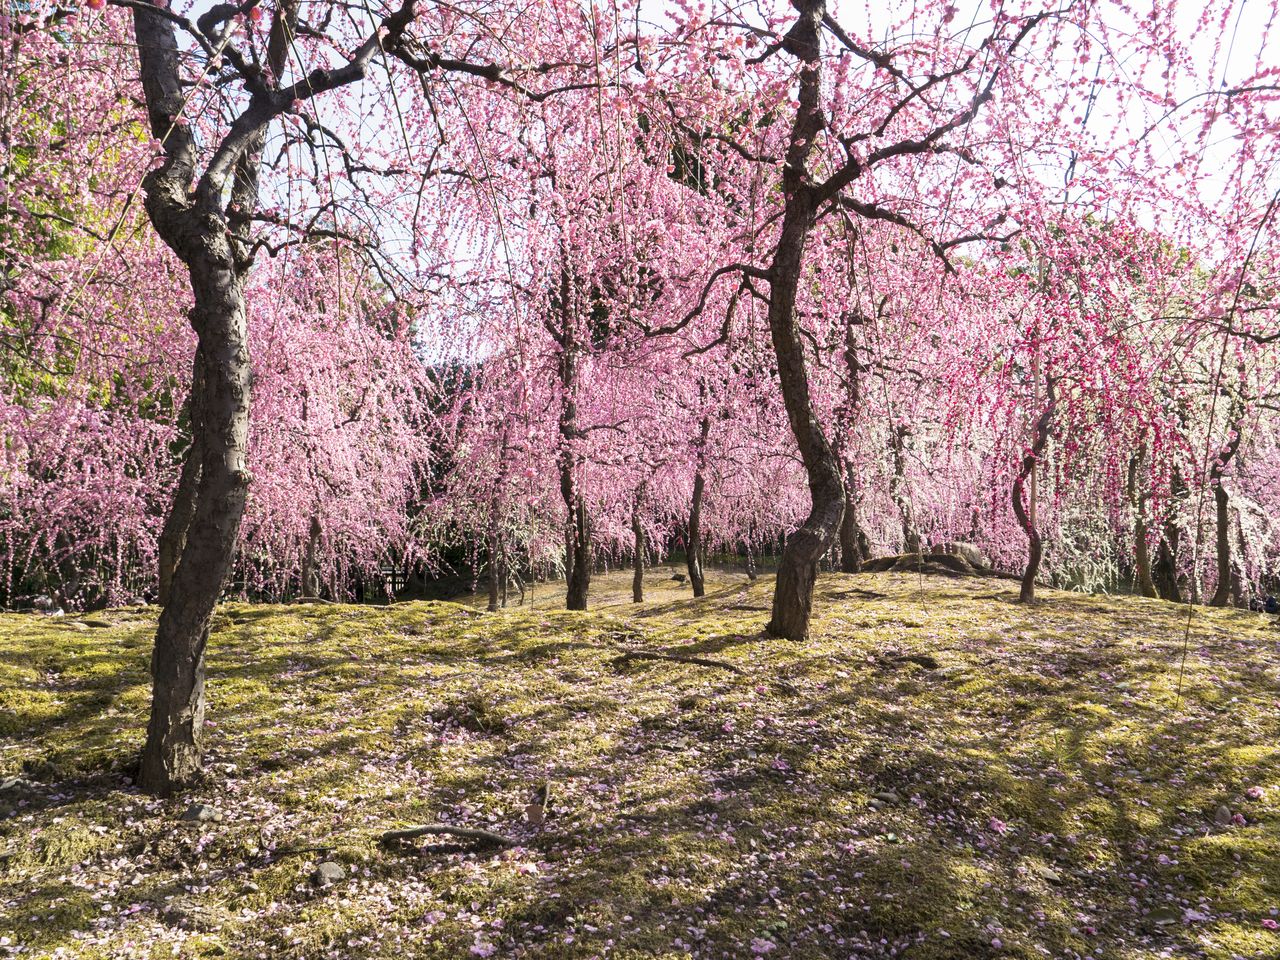 Les branches qui se chevauchent des pruniers en fleurs forment une magnifique cascade de dégradés de rose.